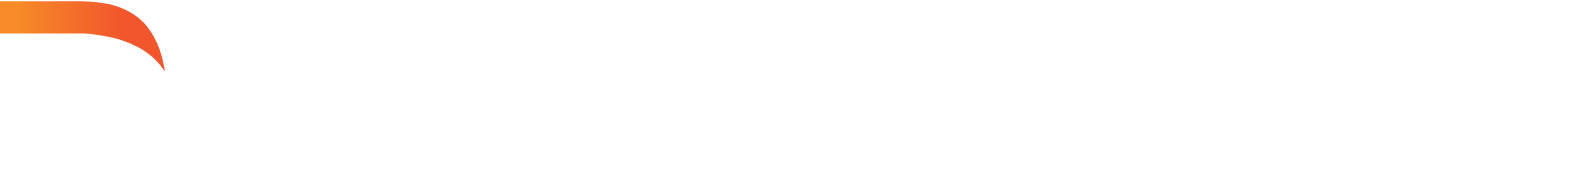 Darktrace Logo groß für dunkle Hintergründe (transparentes PNG)